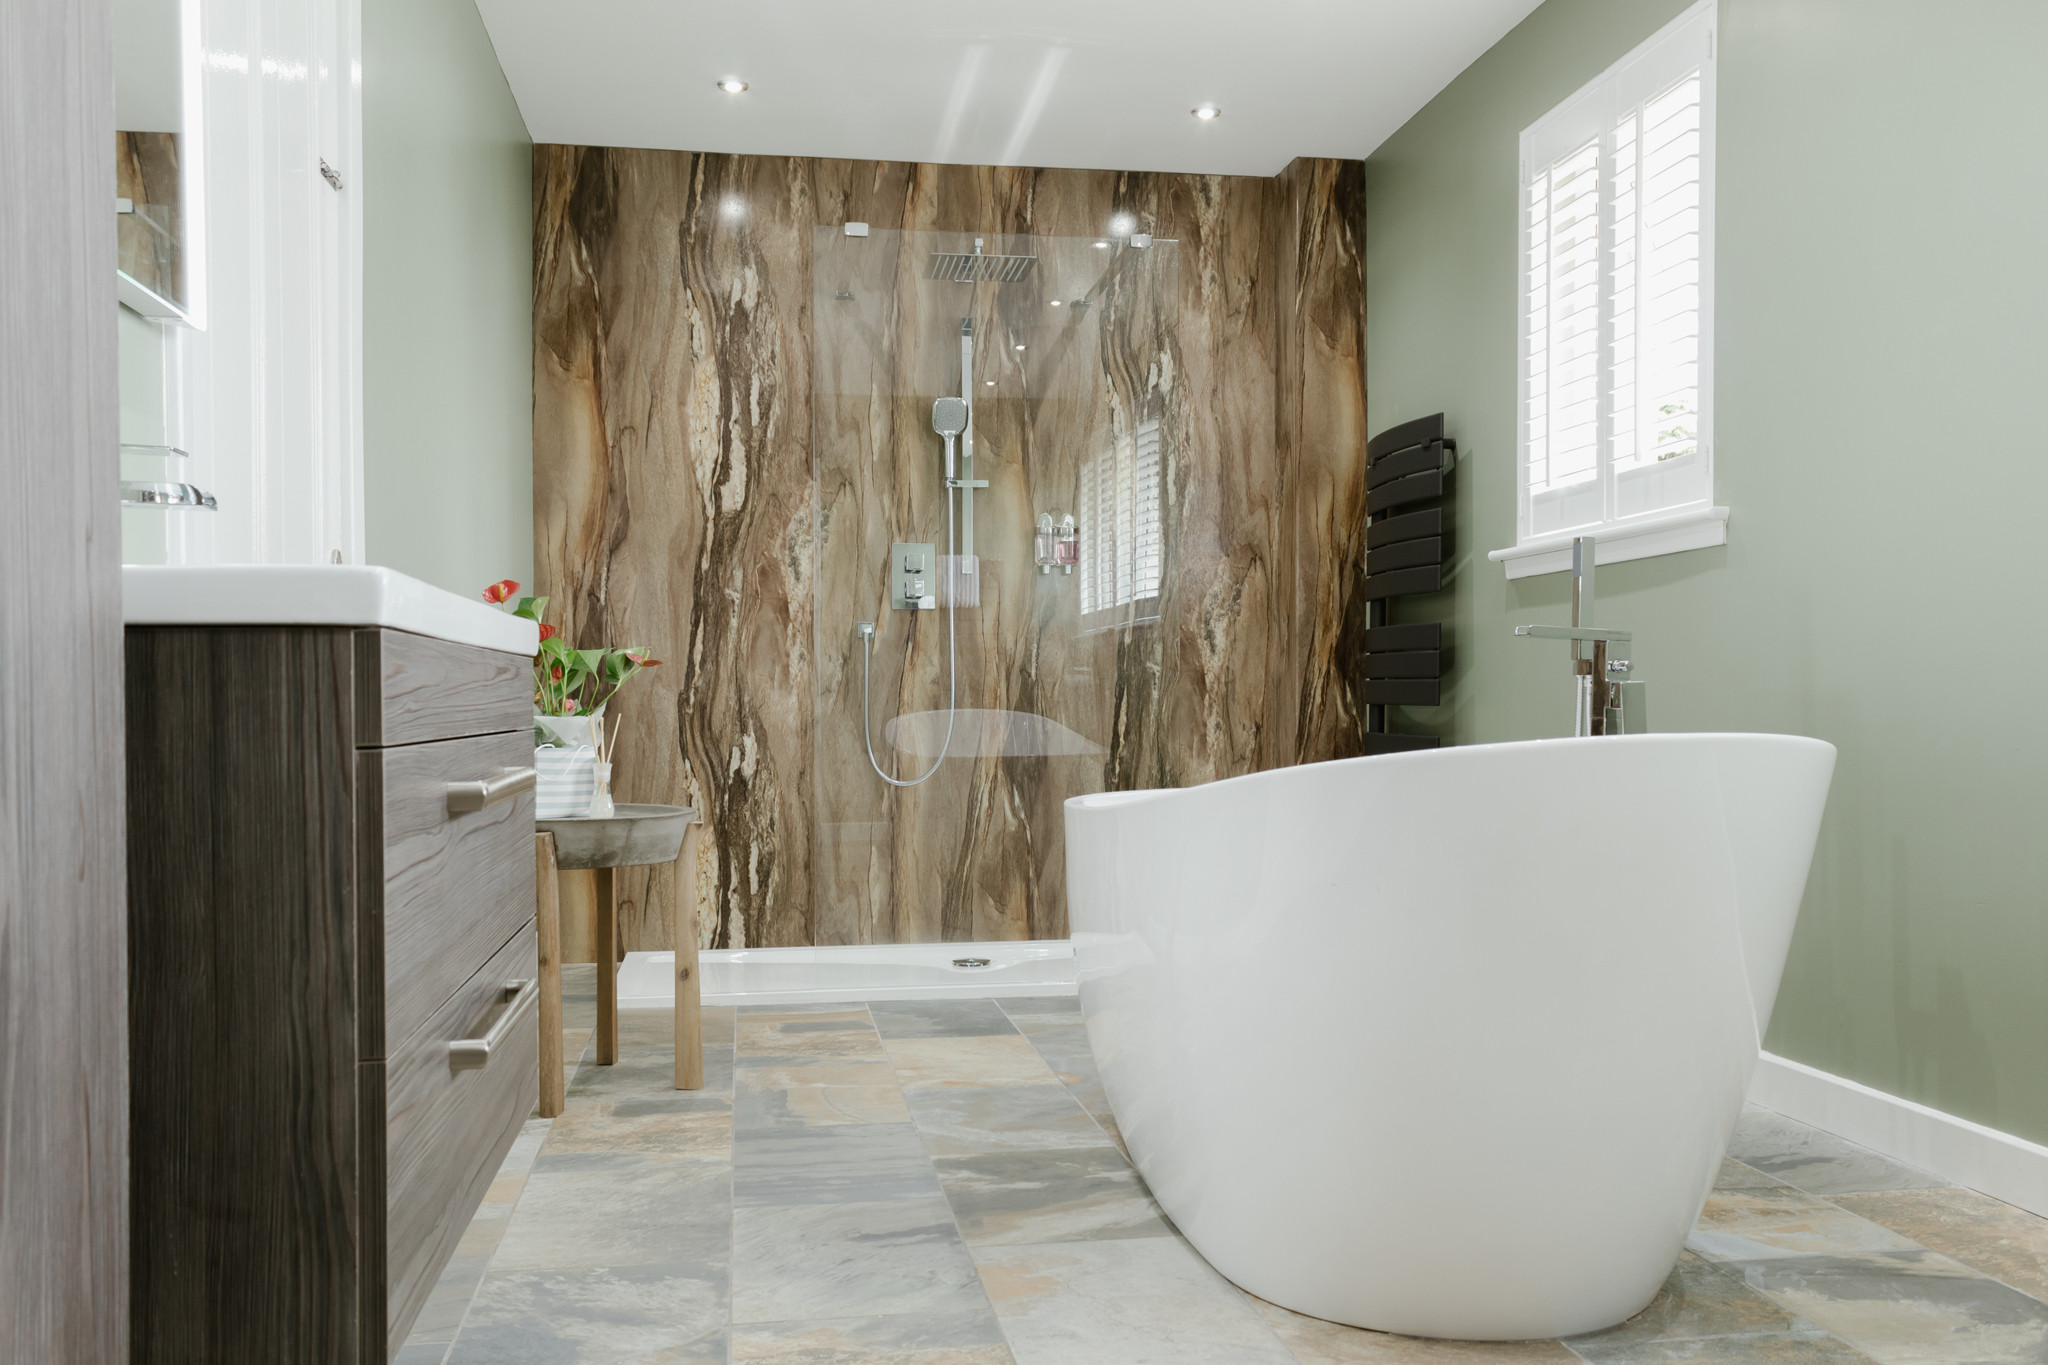 Bathroom Wall Coverings Waterproof
 Alternatives to Tiling Your Bathrooms Waterproof